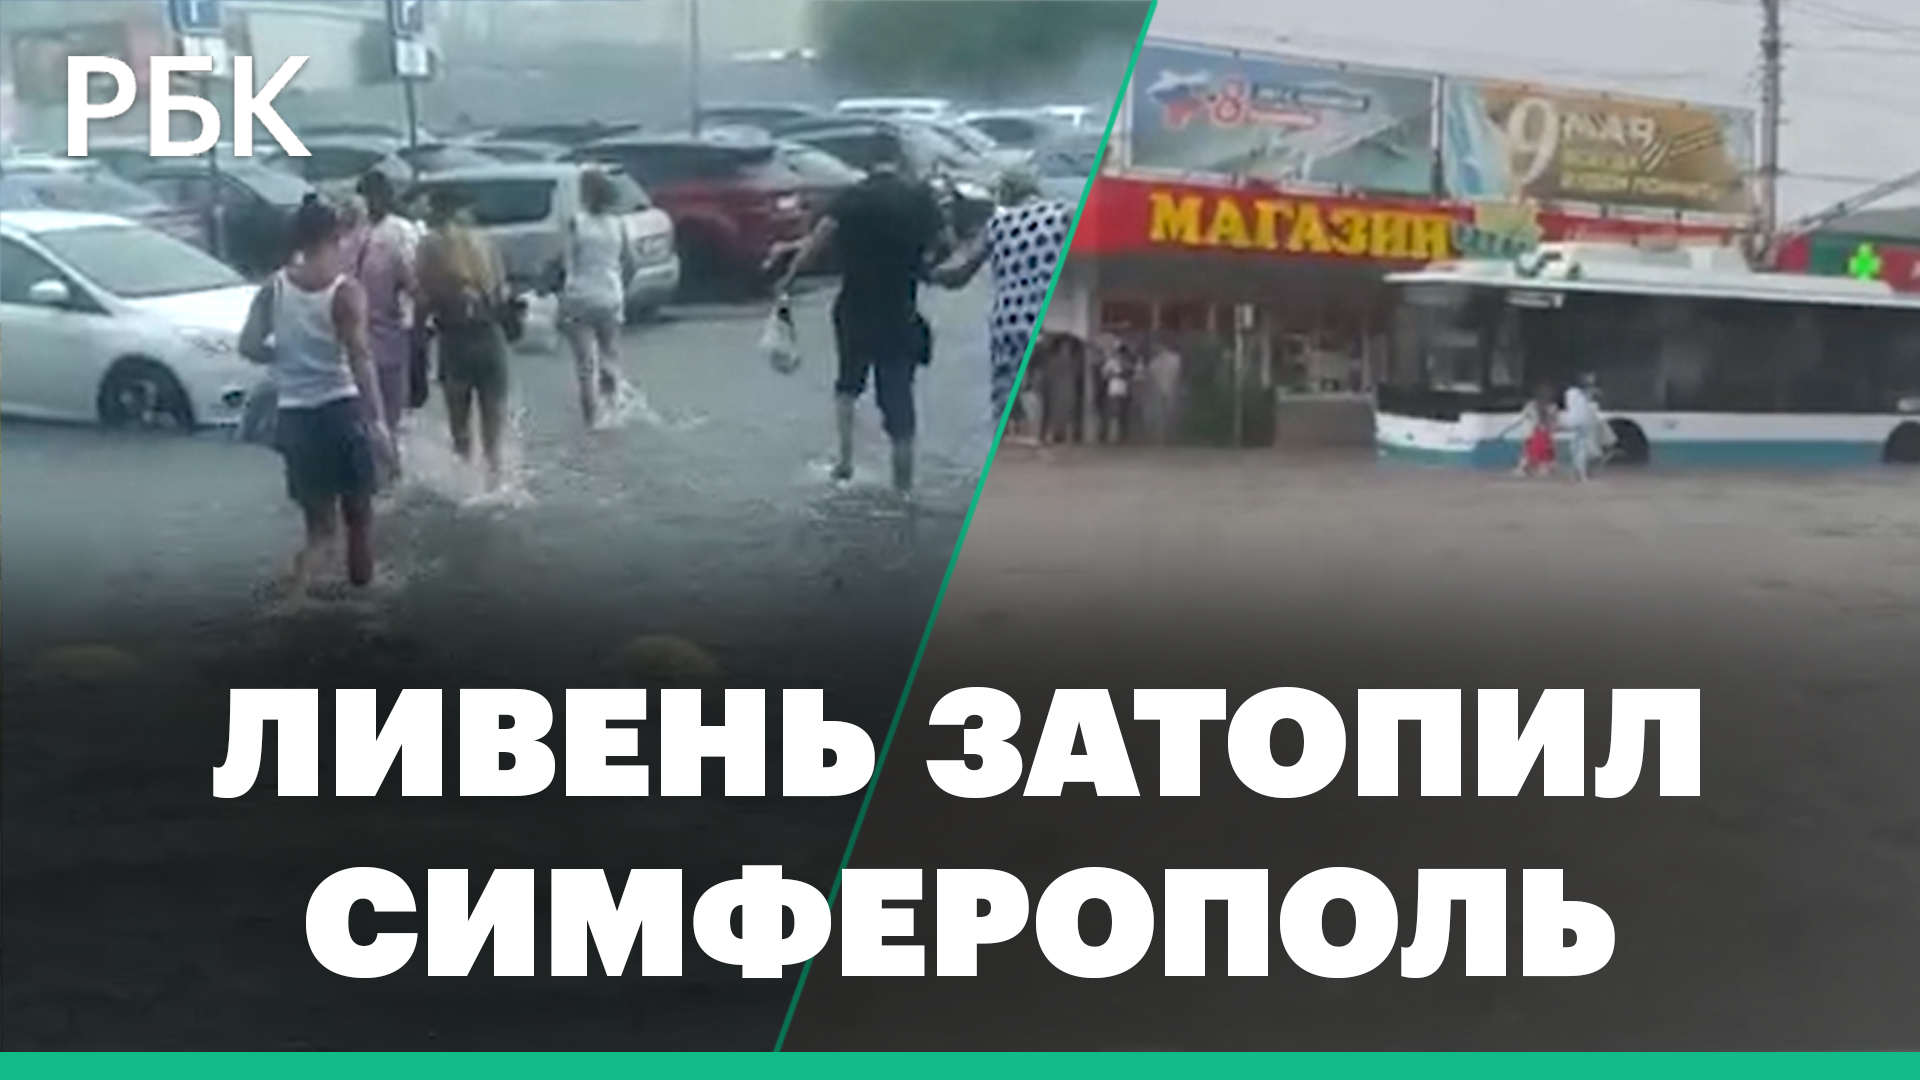 На Симферополь обрушился ливень с градом. Улицы затопило: видео